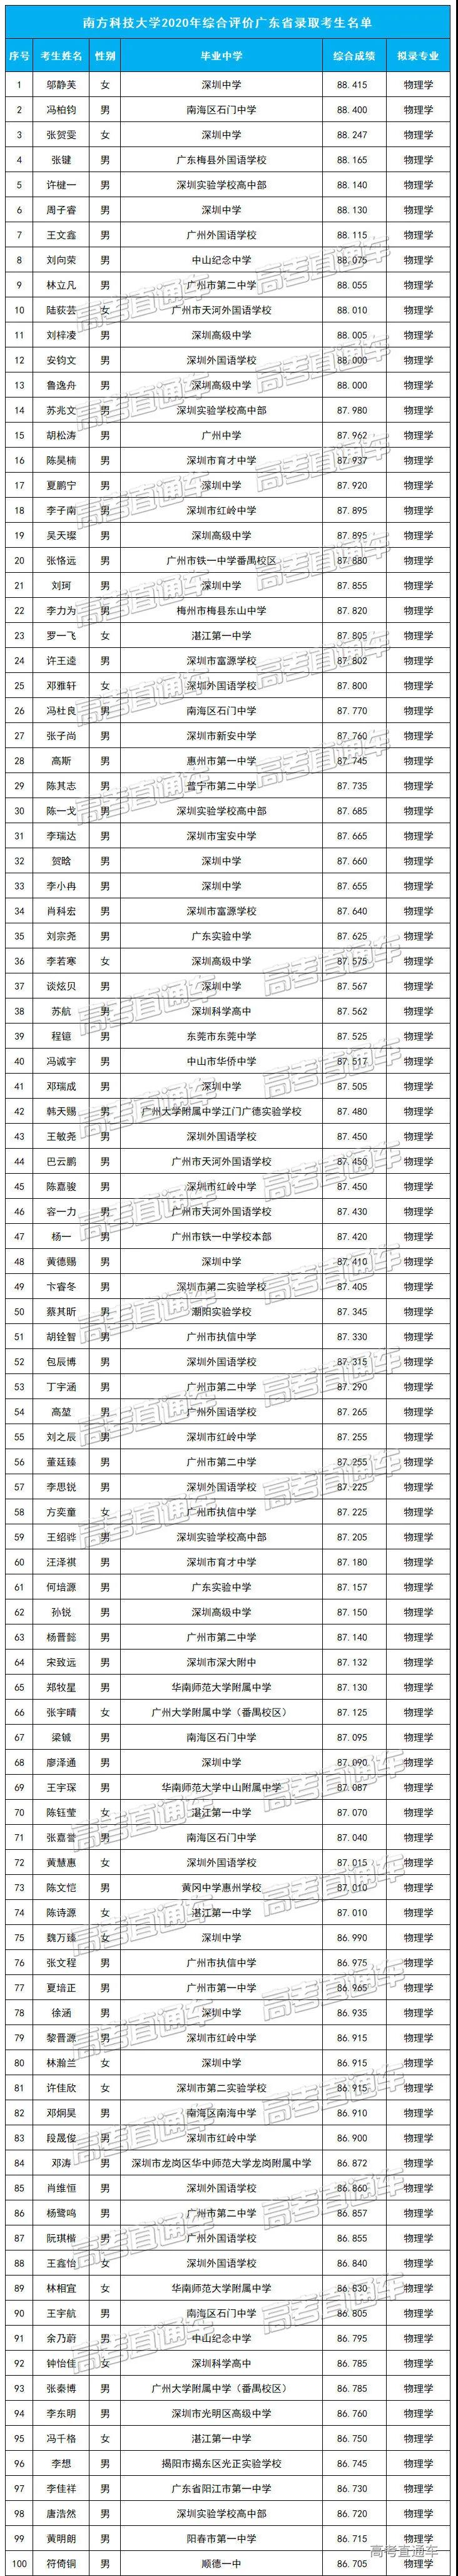 南方科技大学2020年综合评价广东省录取考生名单